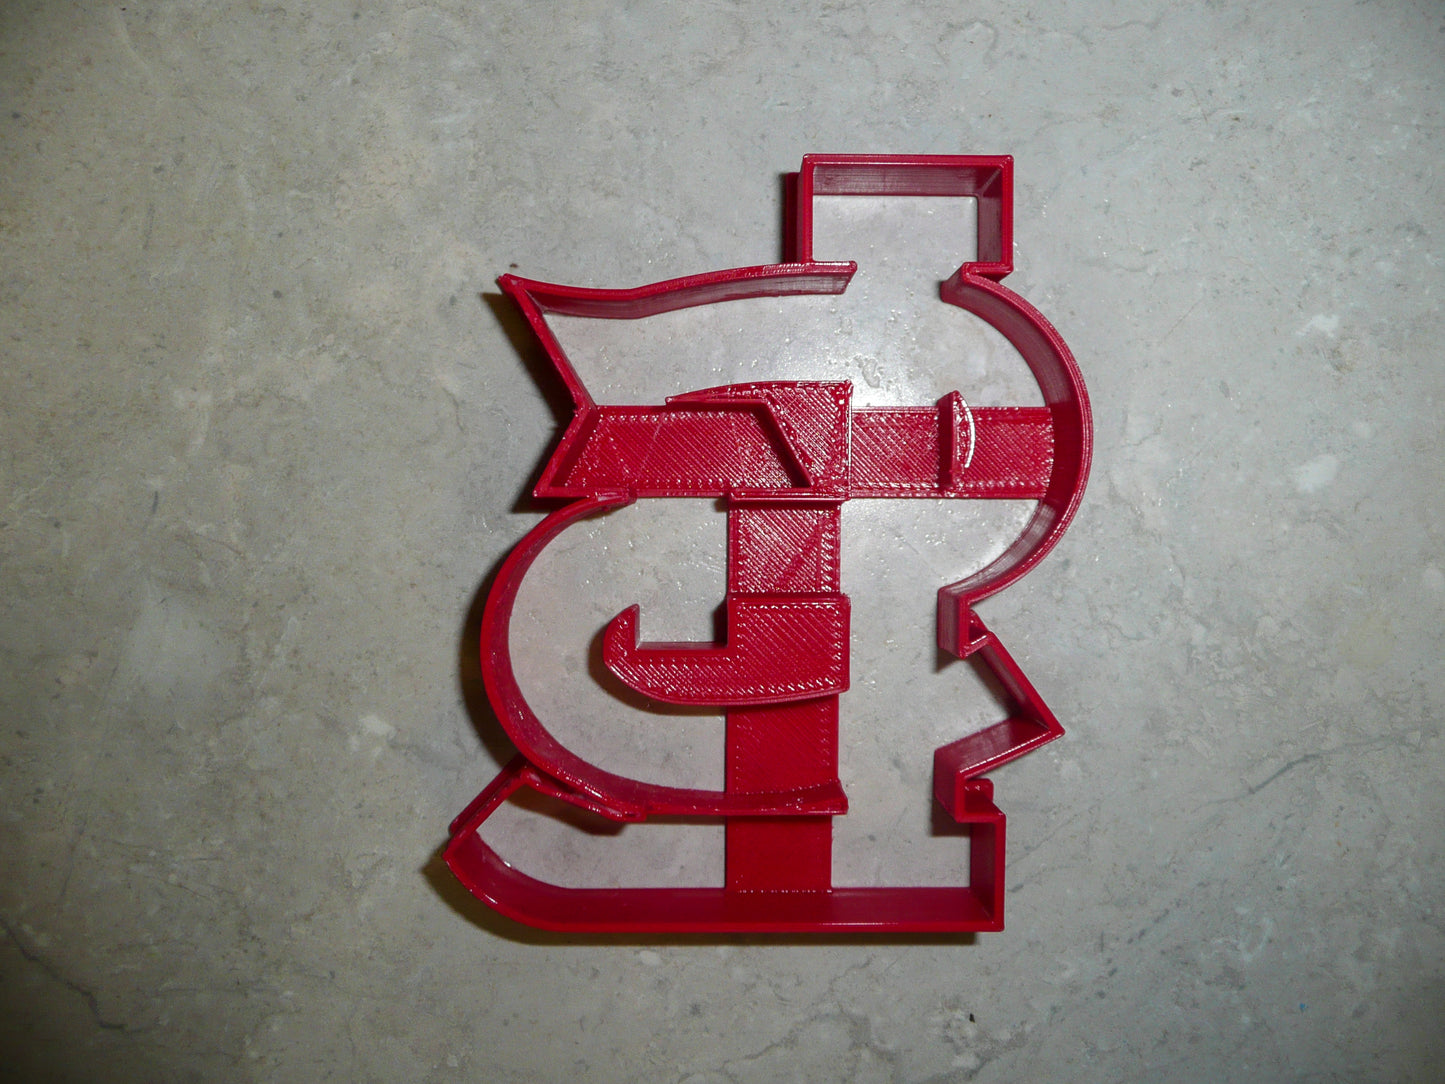 STL St Louis Cardinals Baseball Team Cookie Cutter Made In USA PR2089